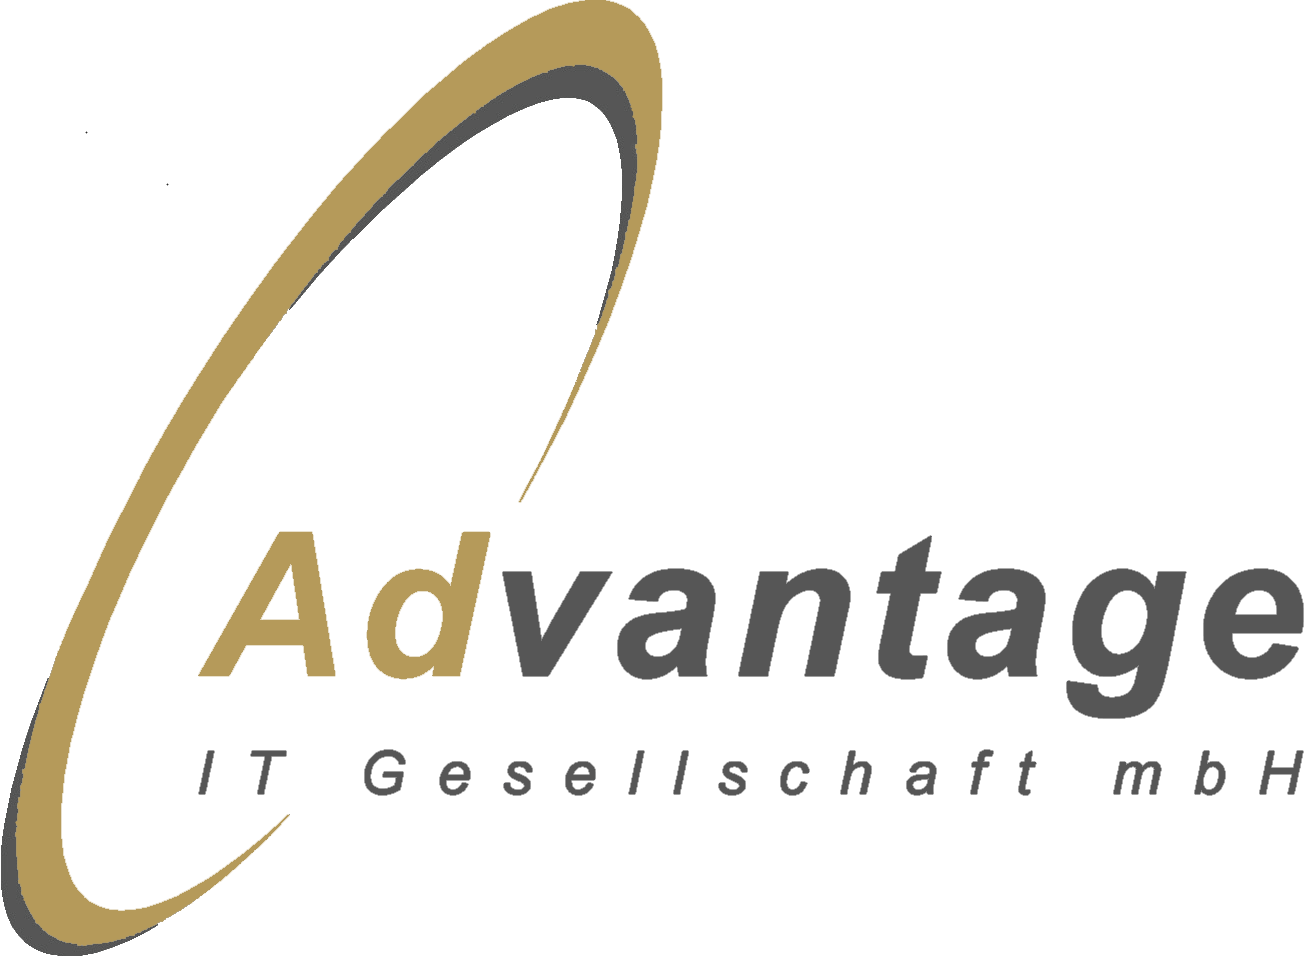 Advantage-IT GmbH
Experte für des Management von IT Projekten